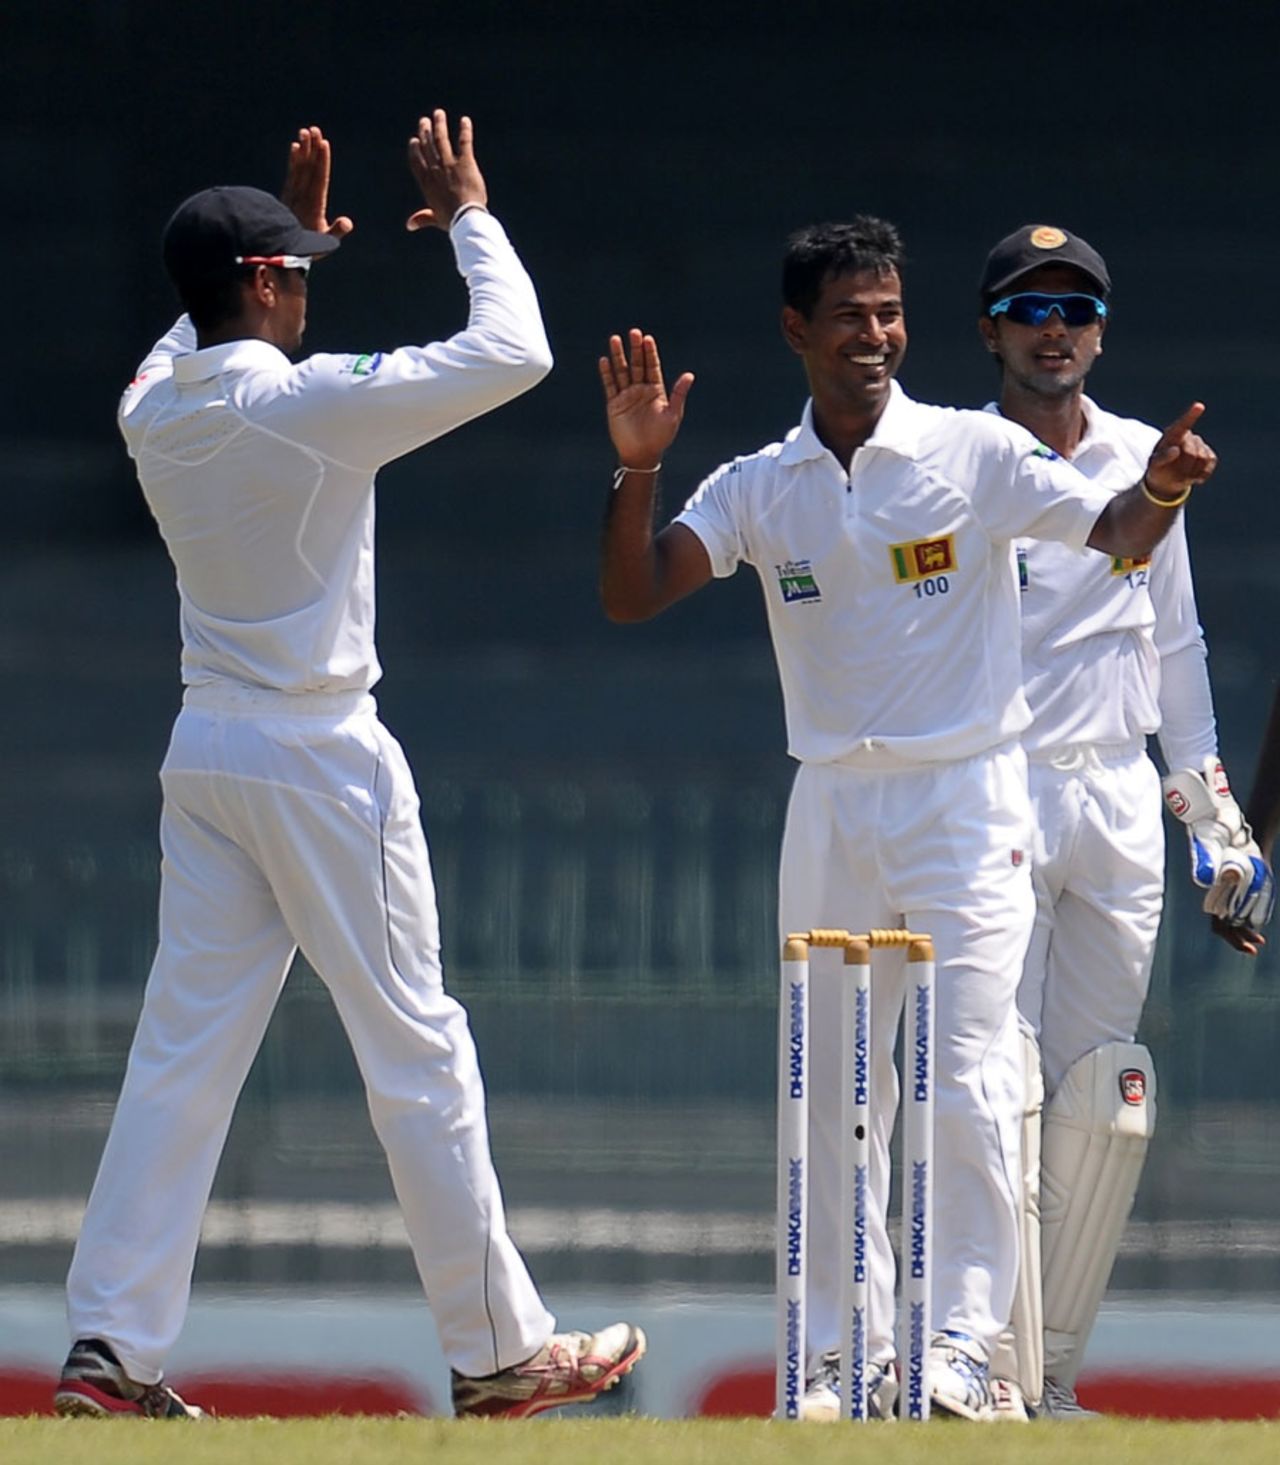 Nuwan Kulasekara struck early to dismiss Tamim Iqbal, Sri Lanka v Bangladesh, 2nd Test, Colombo, 1st day, March 16, 2013